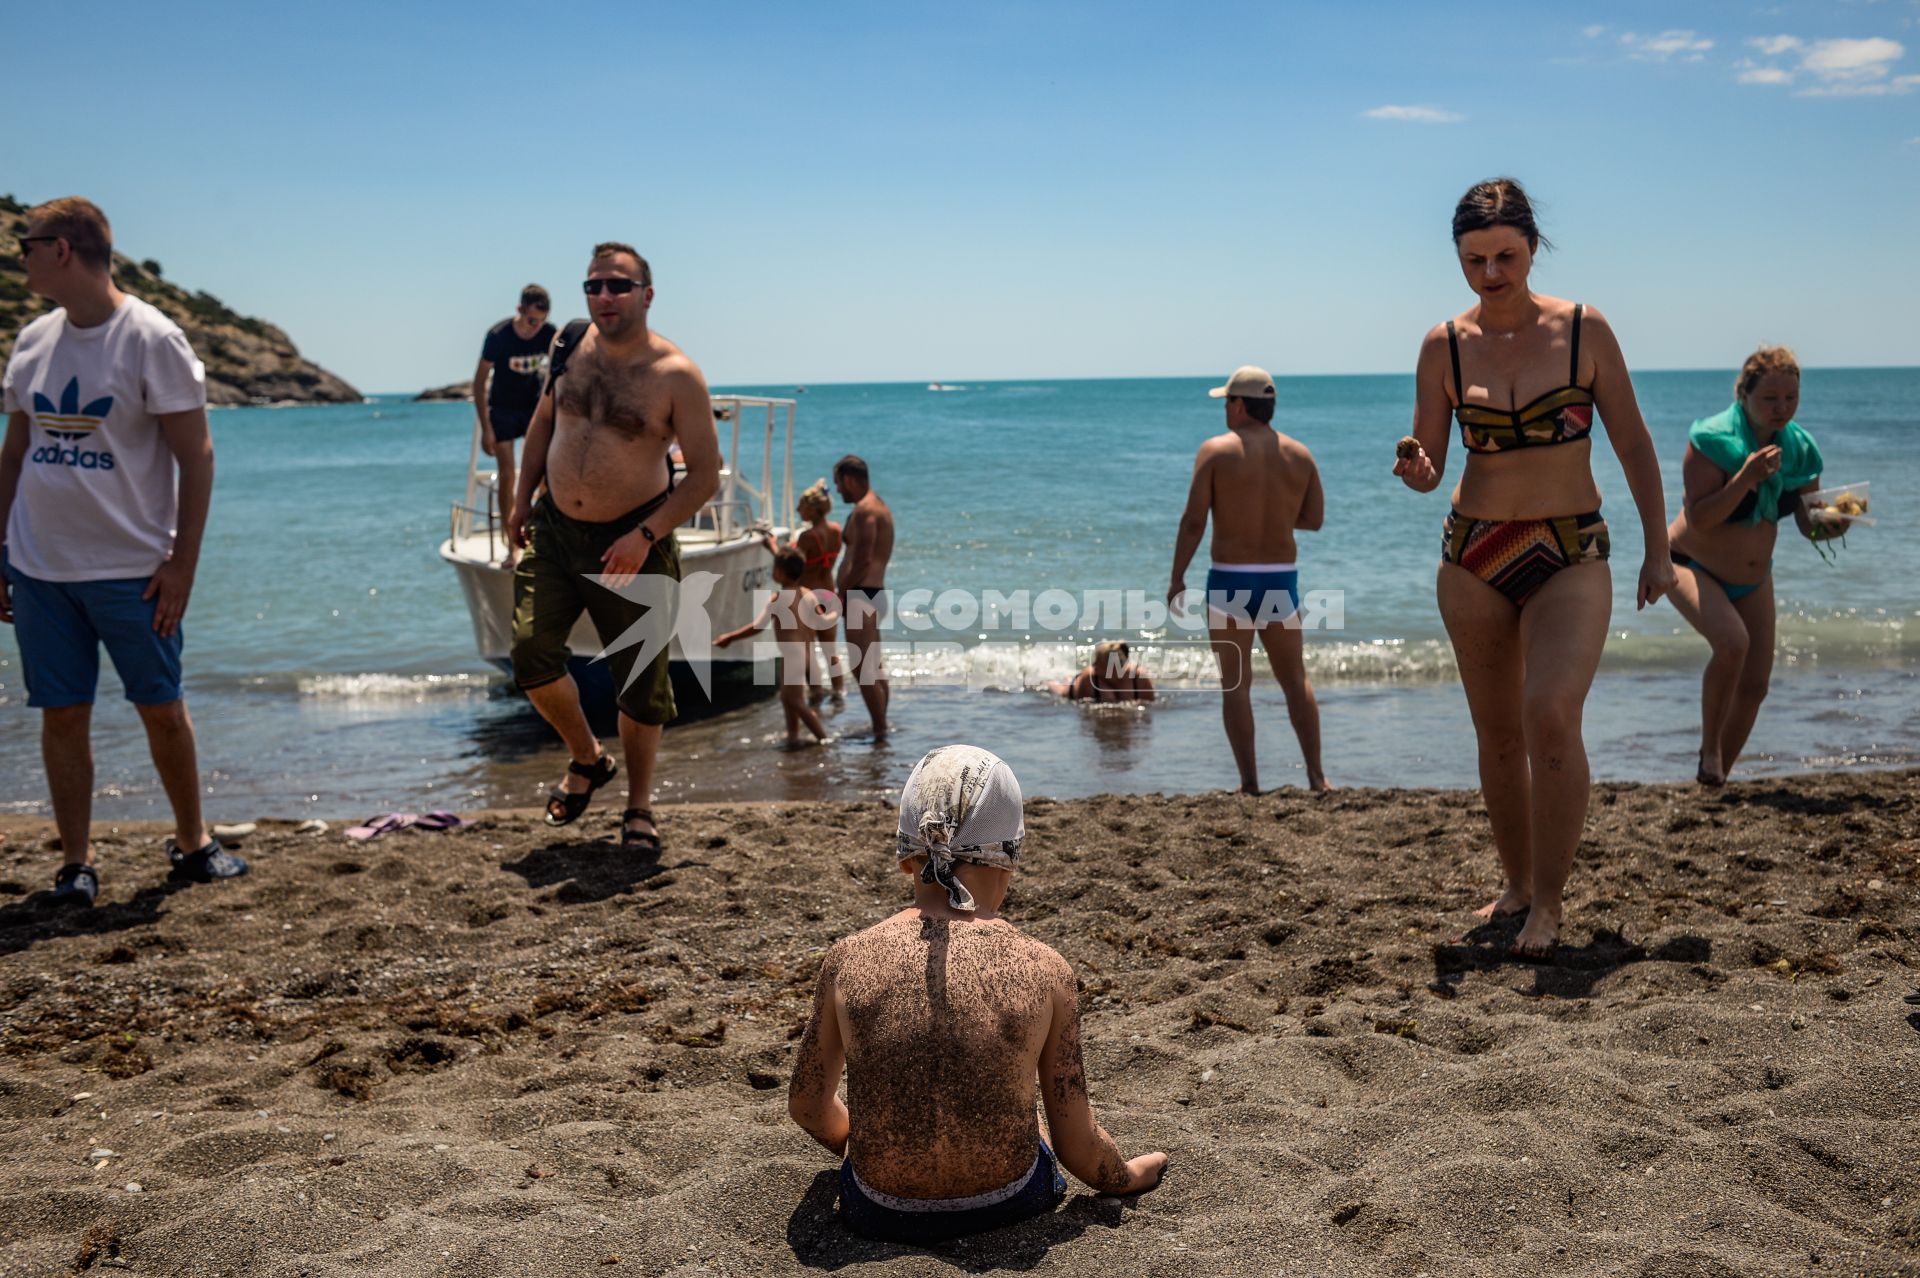 Крым, Новый Свет.  Отдыхающие загорают на песчаном пляже.